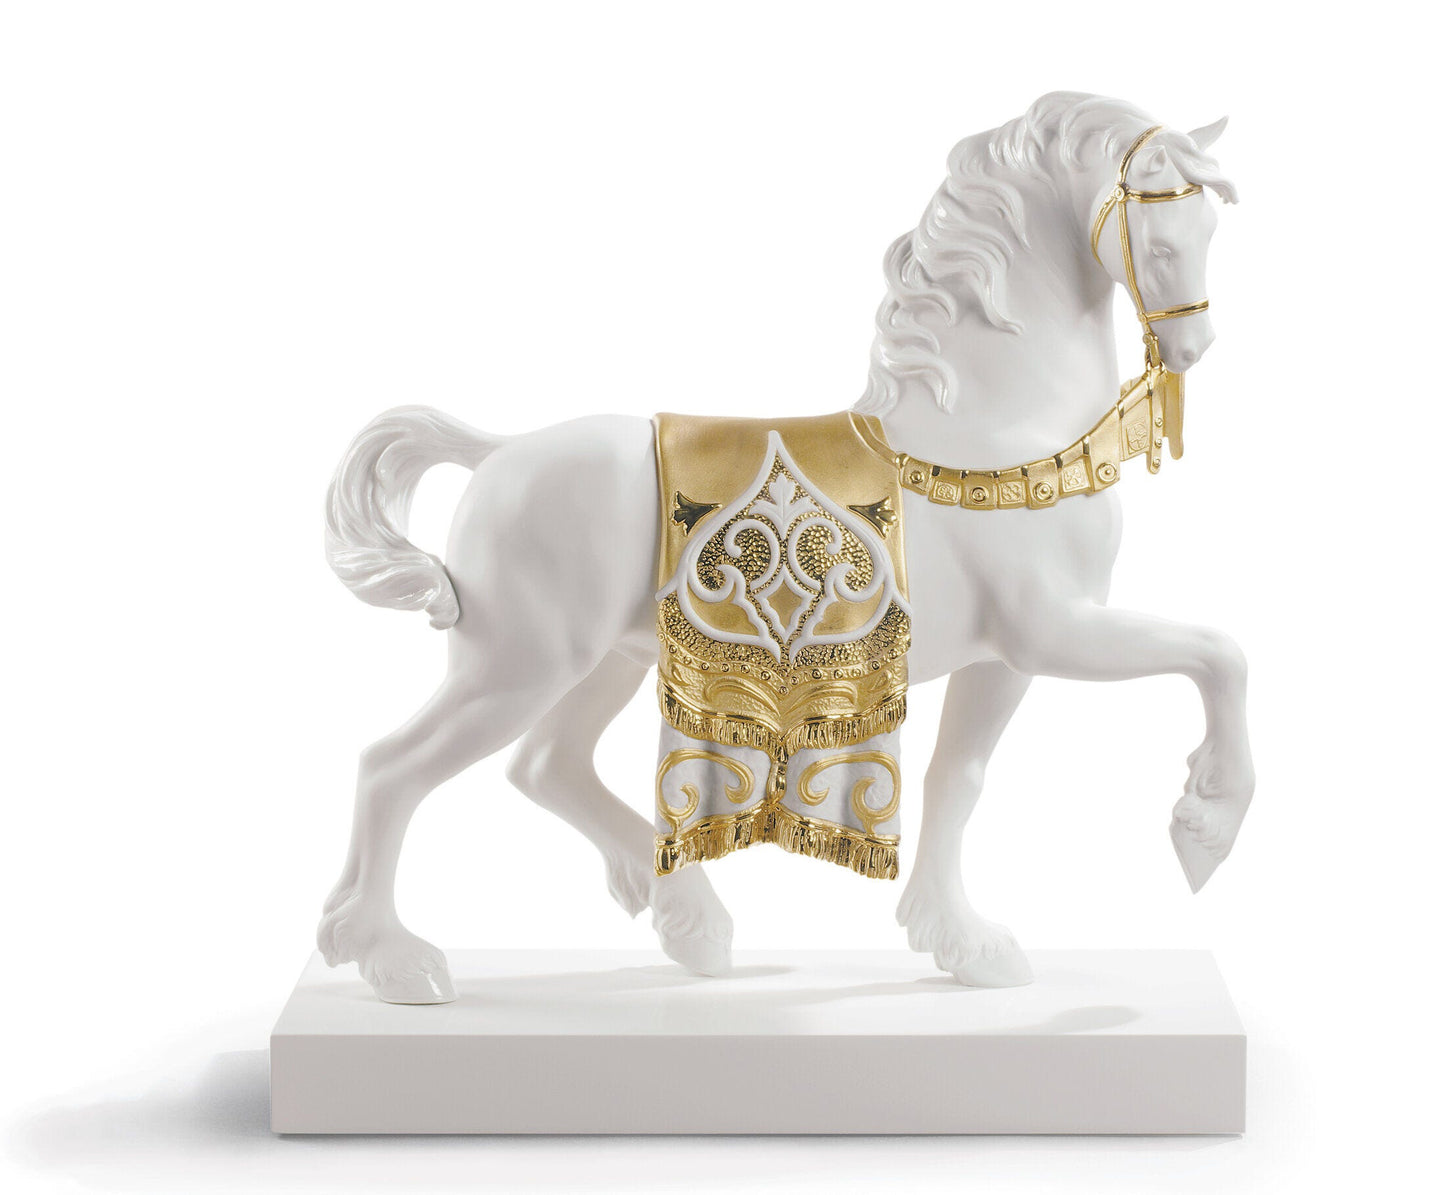 A Regal Steed Horse Sculpture Golden Lustre